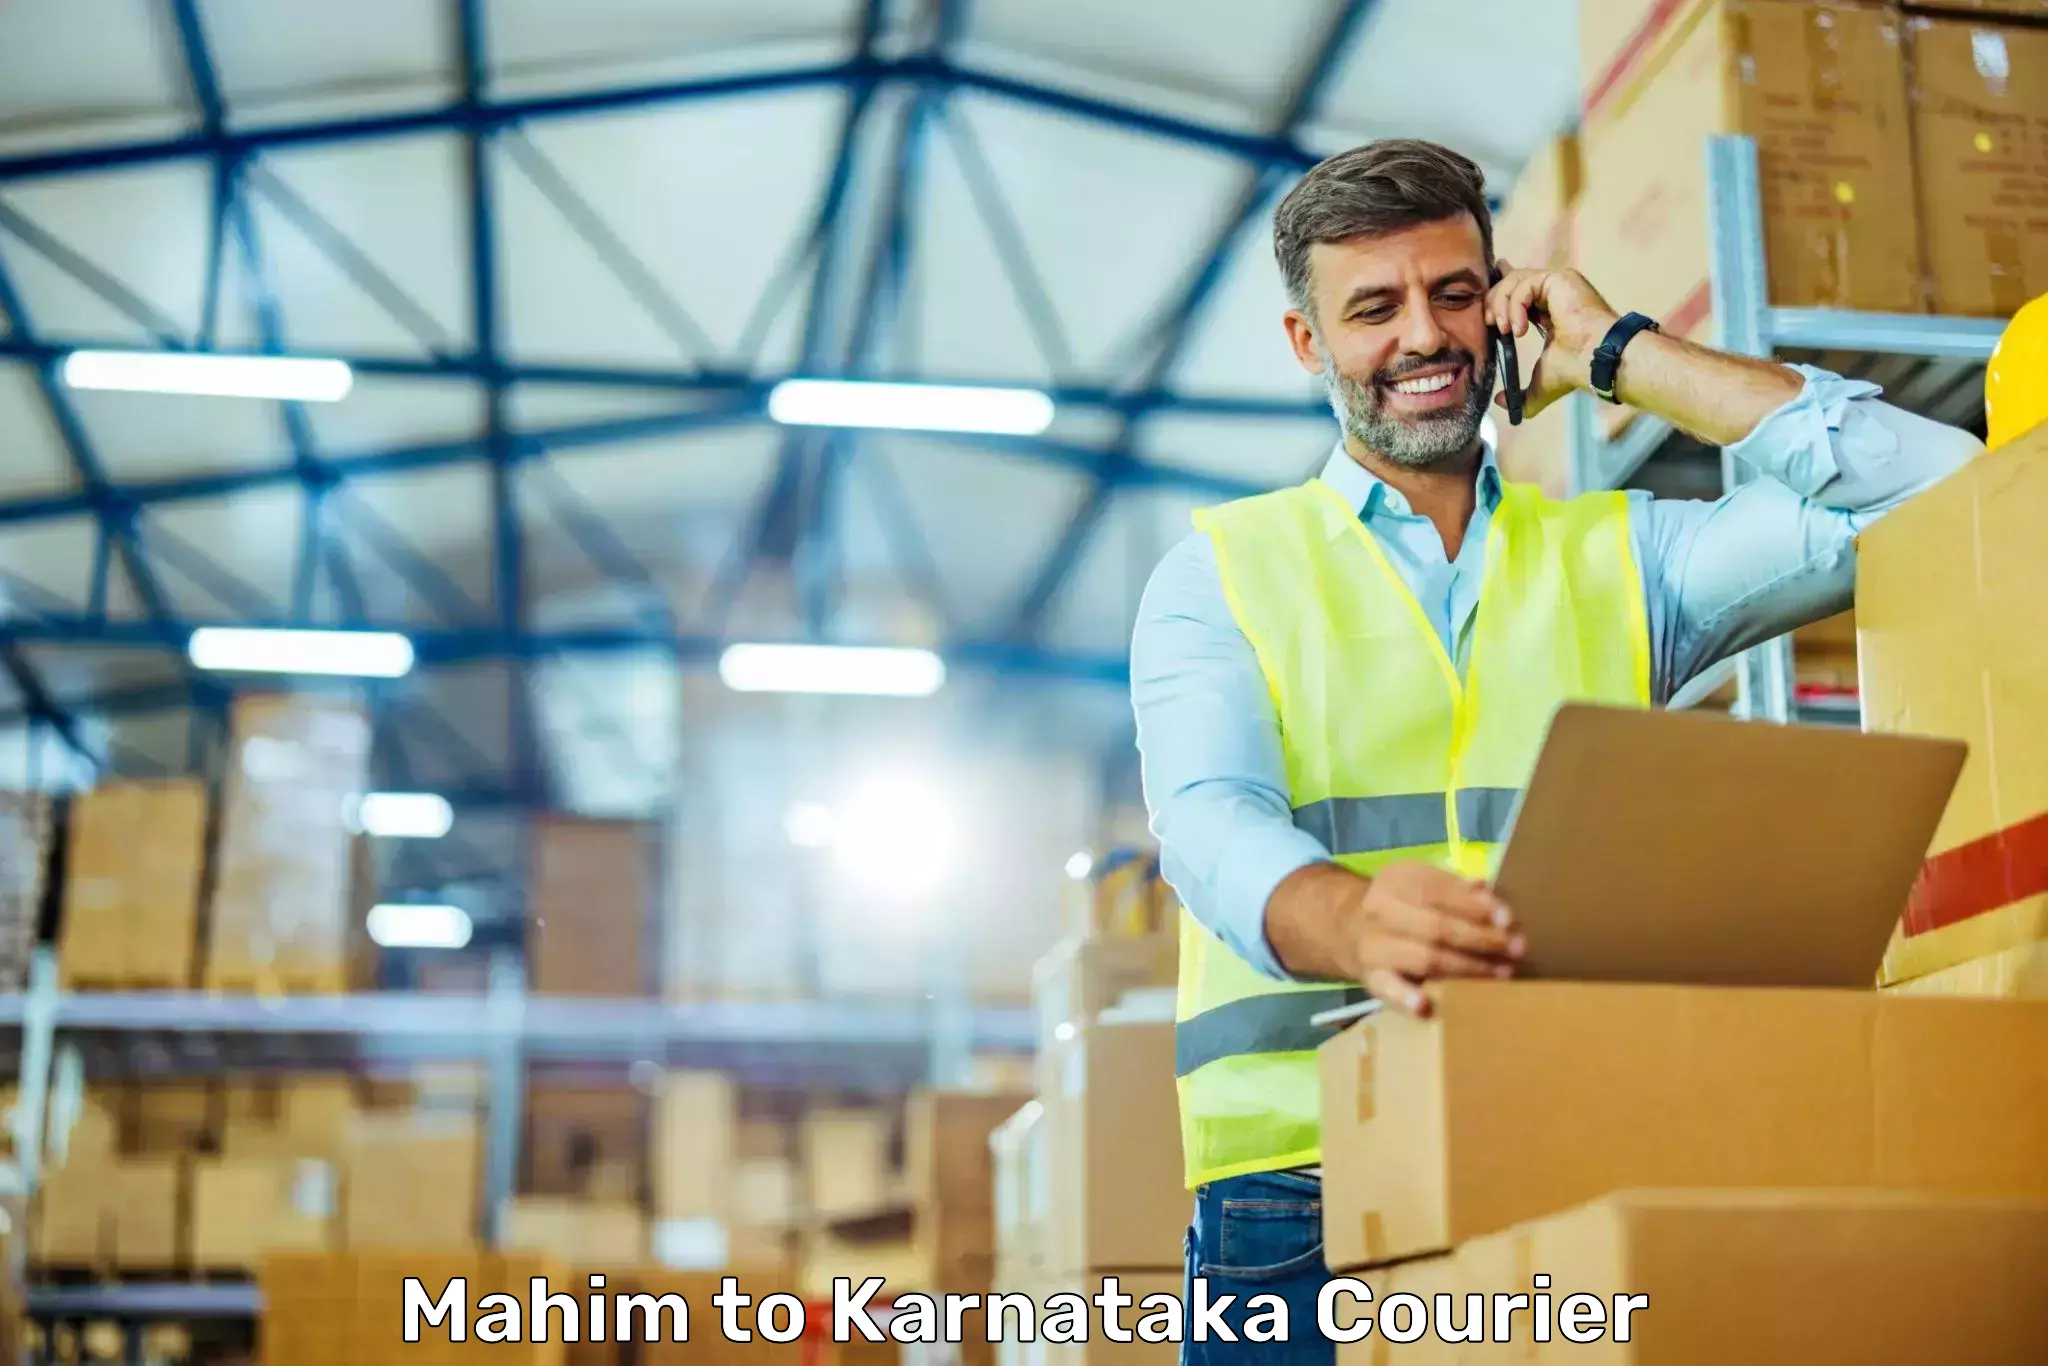 Affordable parcel service Mahim to Karnataka